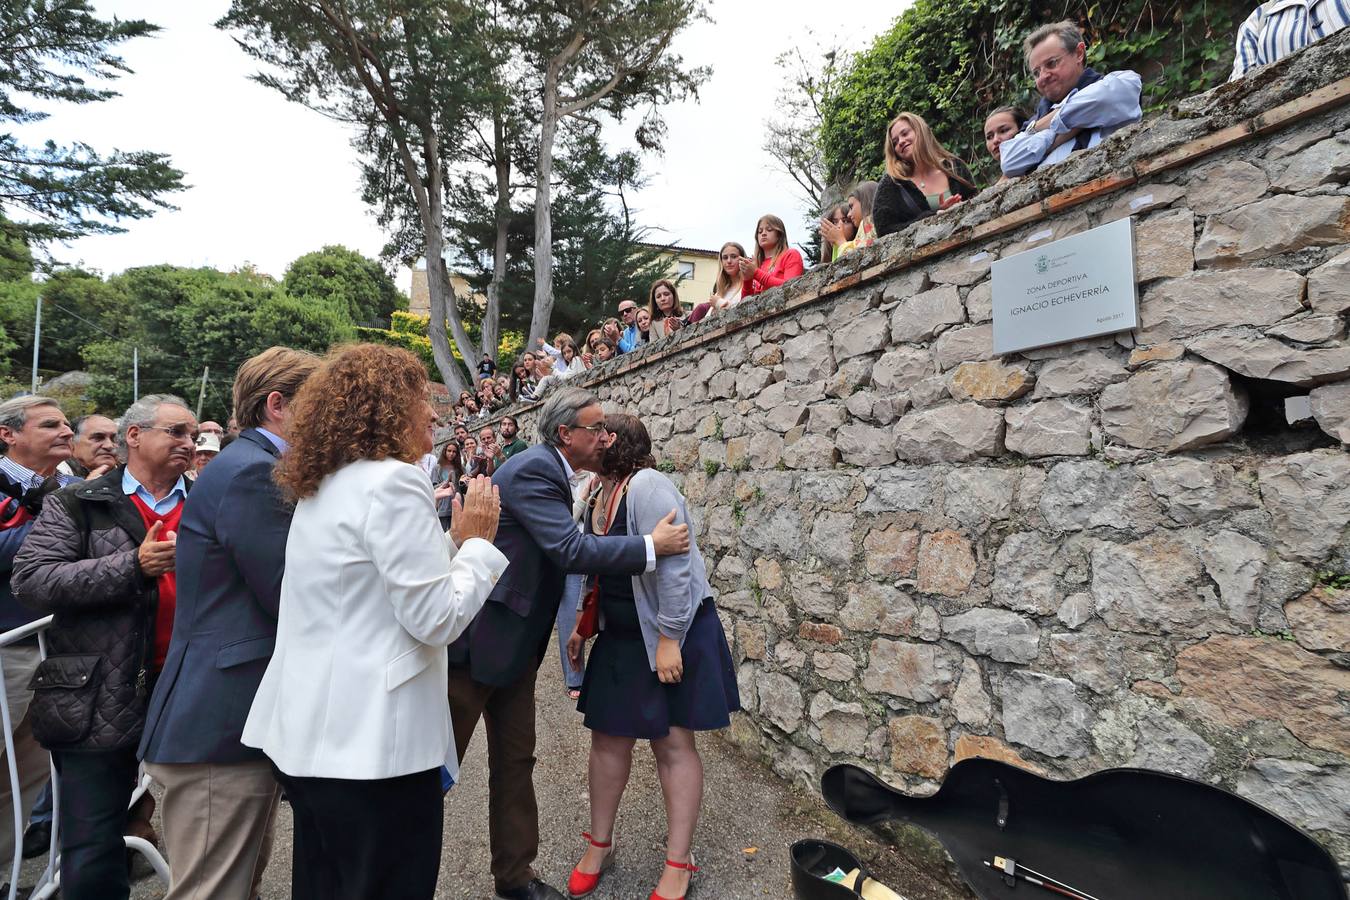 La alcaldesa descubre la placa con el nombre de Ignacio Echeverría, fallecido en el atentado de Londres